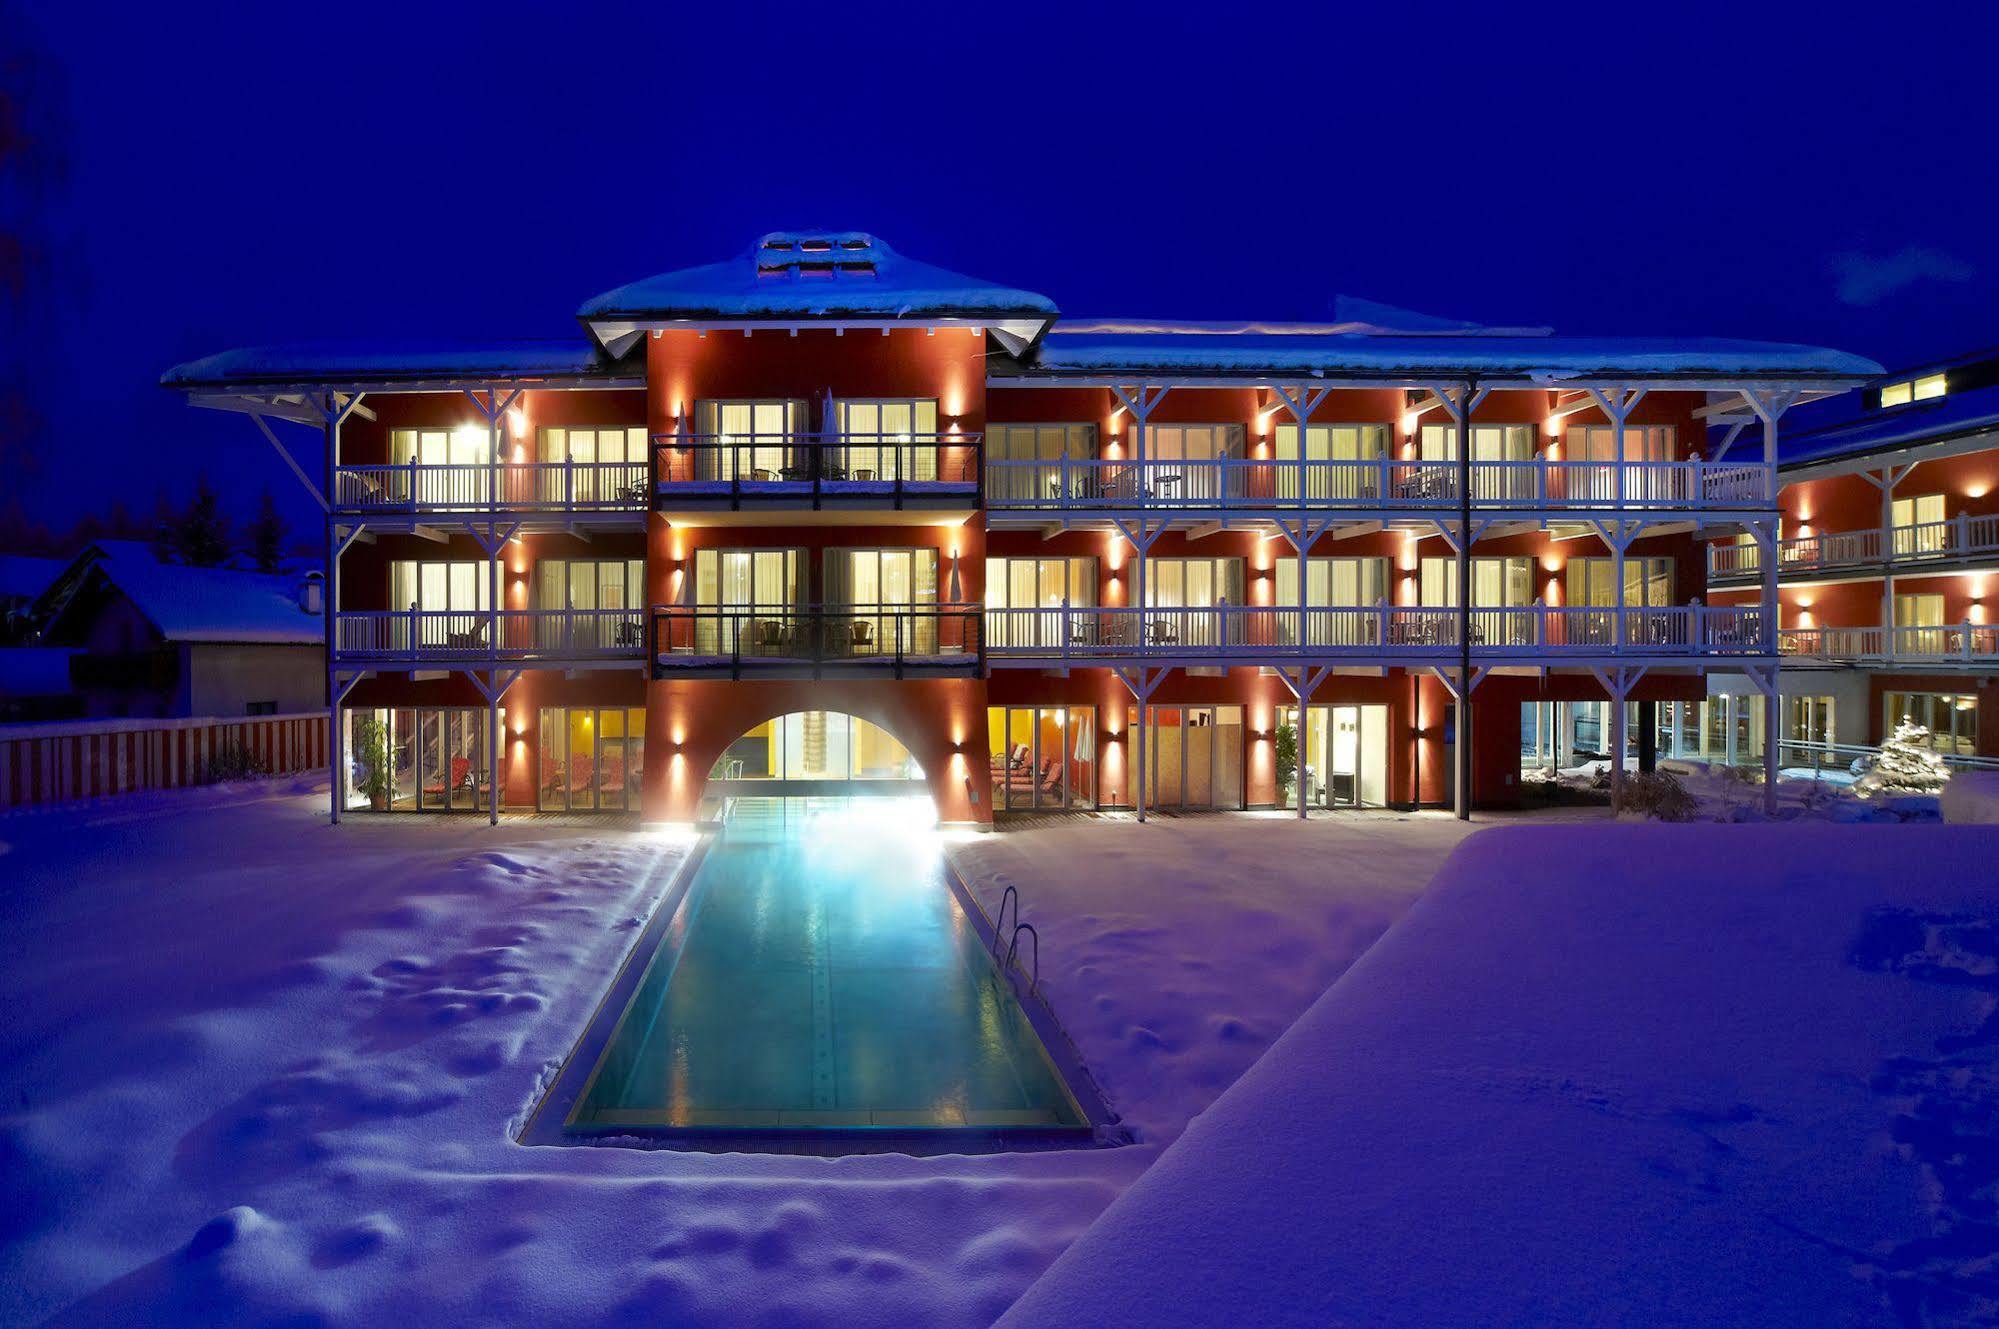 Das Hotel Eden - Das Aktiv- & Wohlfuhlhotel In Tirol Auf 1200M Hohe Зеефельд в Тироле Экстерьер фото